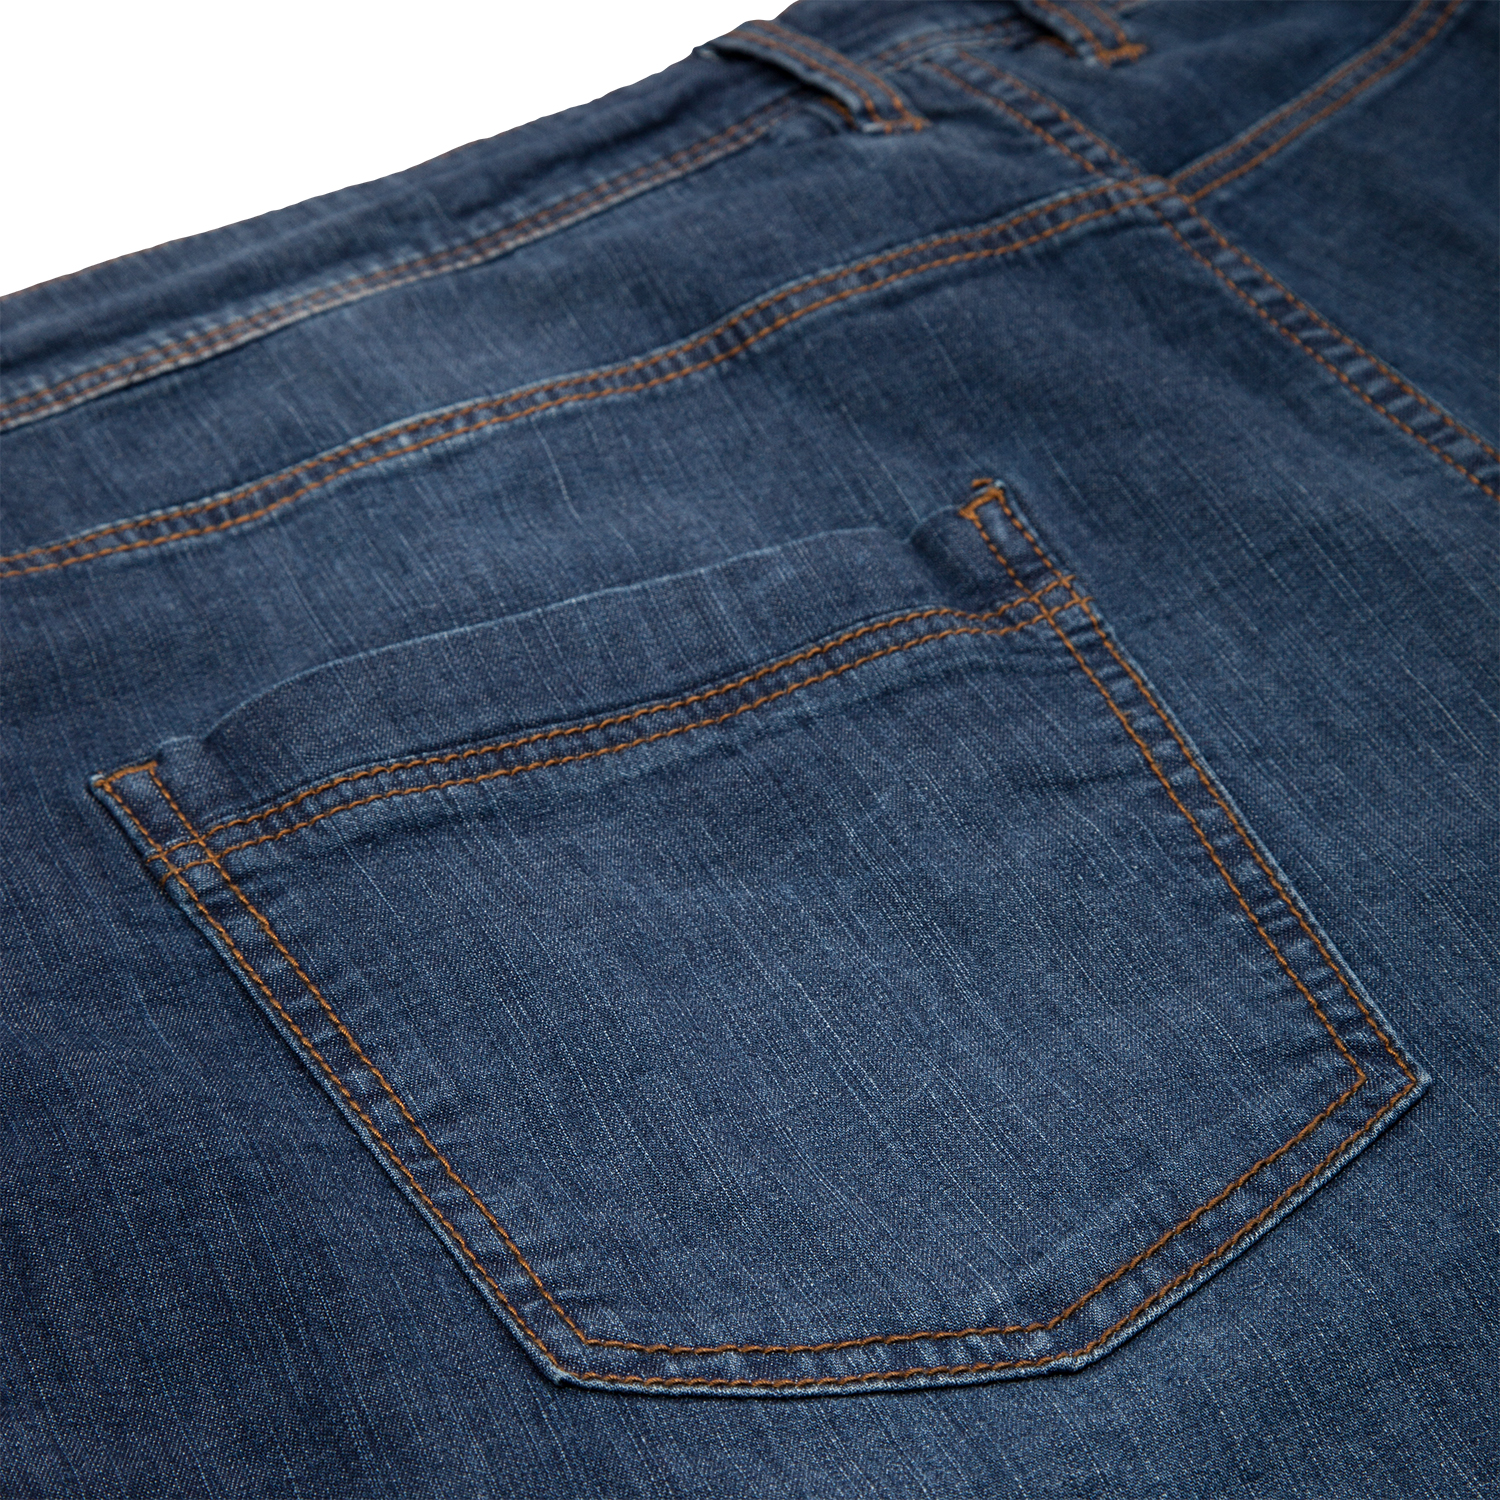 Jeans Shorts Herren "Markham" in großen Größen bis 54 von redpoint dark blue